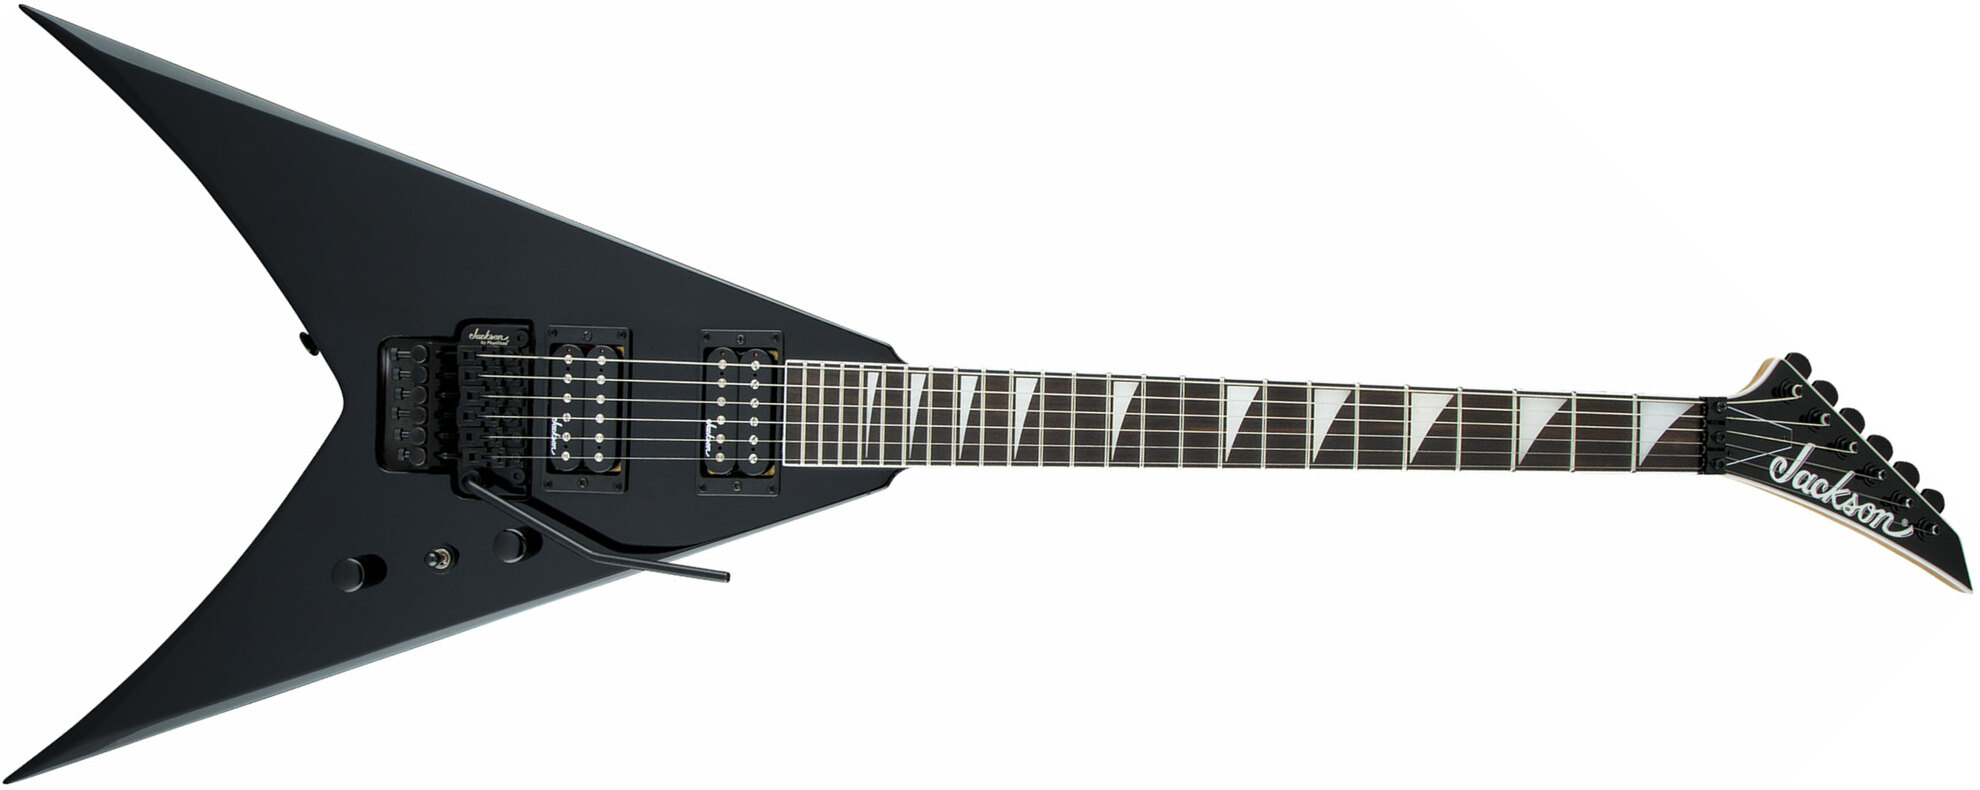 Jackson King V Js32 2h Fr Ama - Black - Metal electric guitar - Main picture